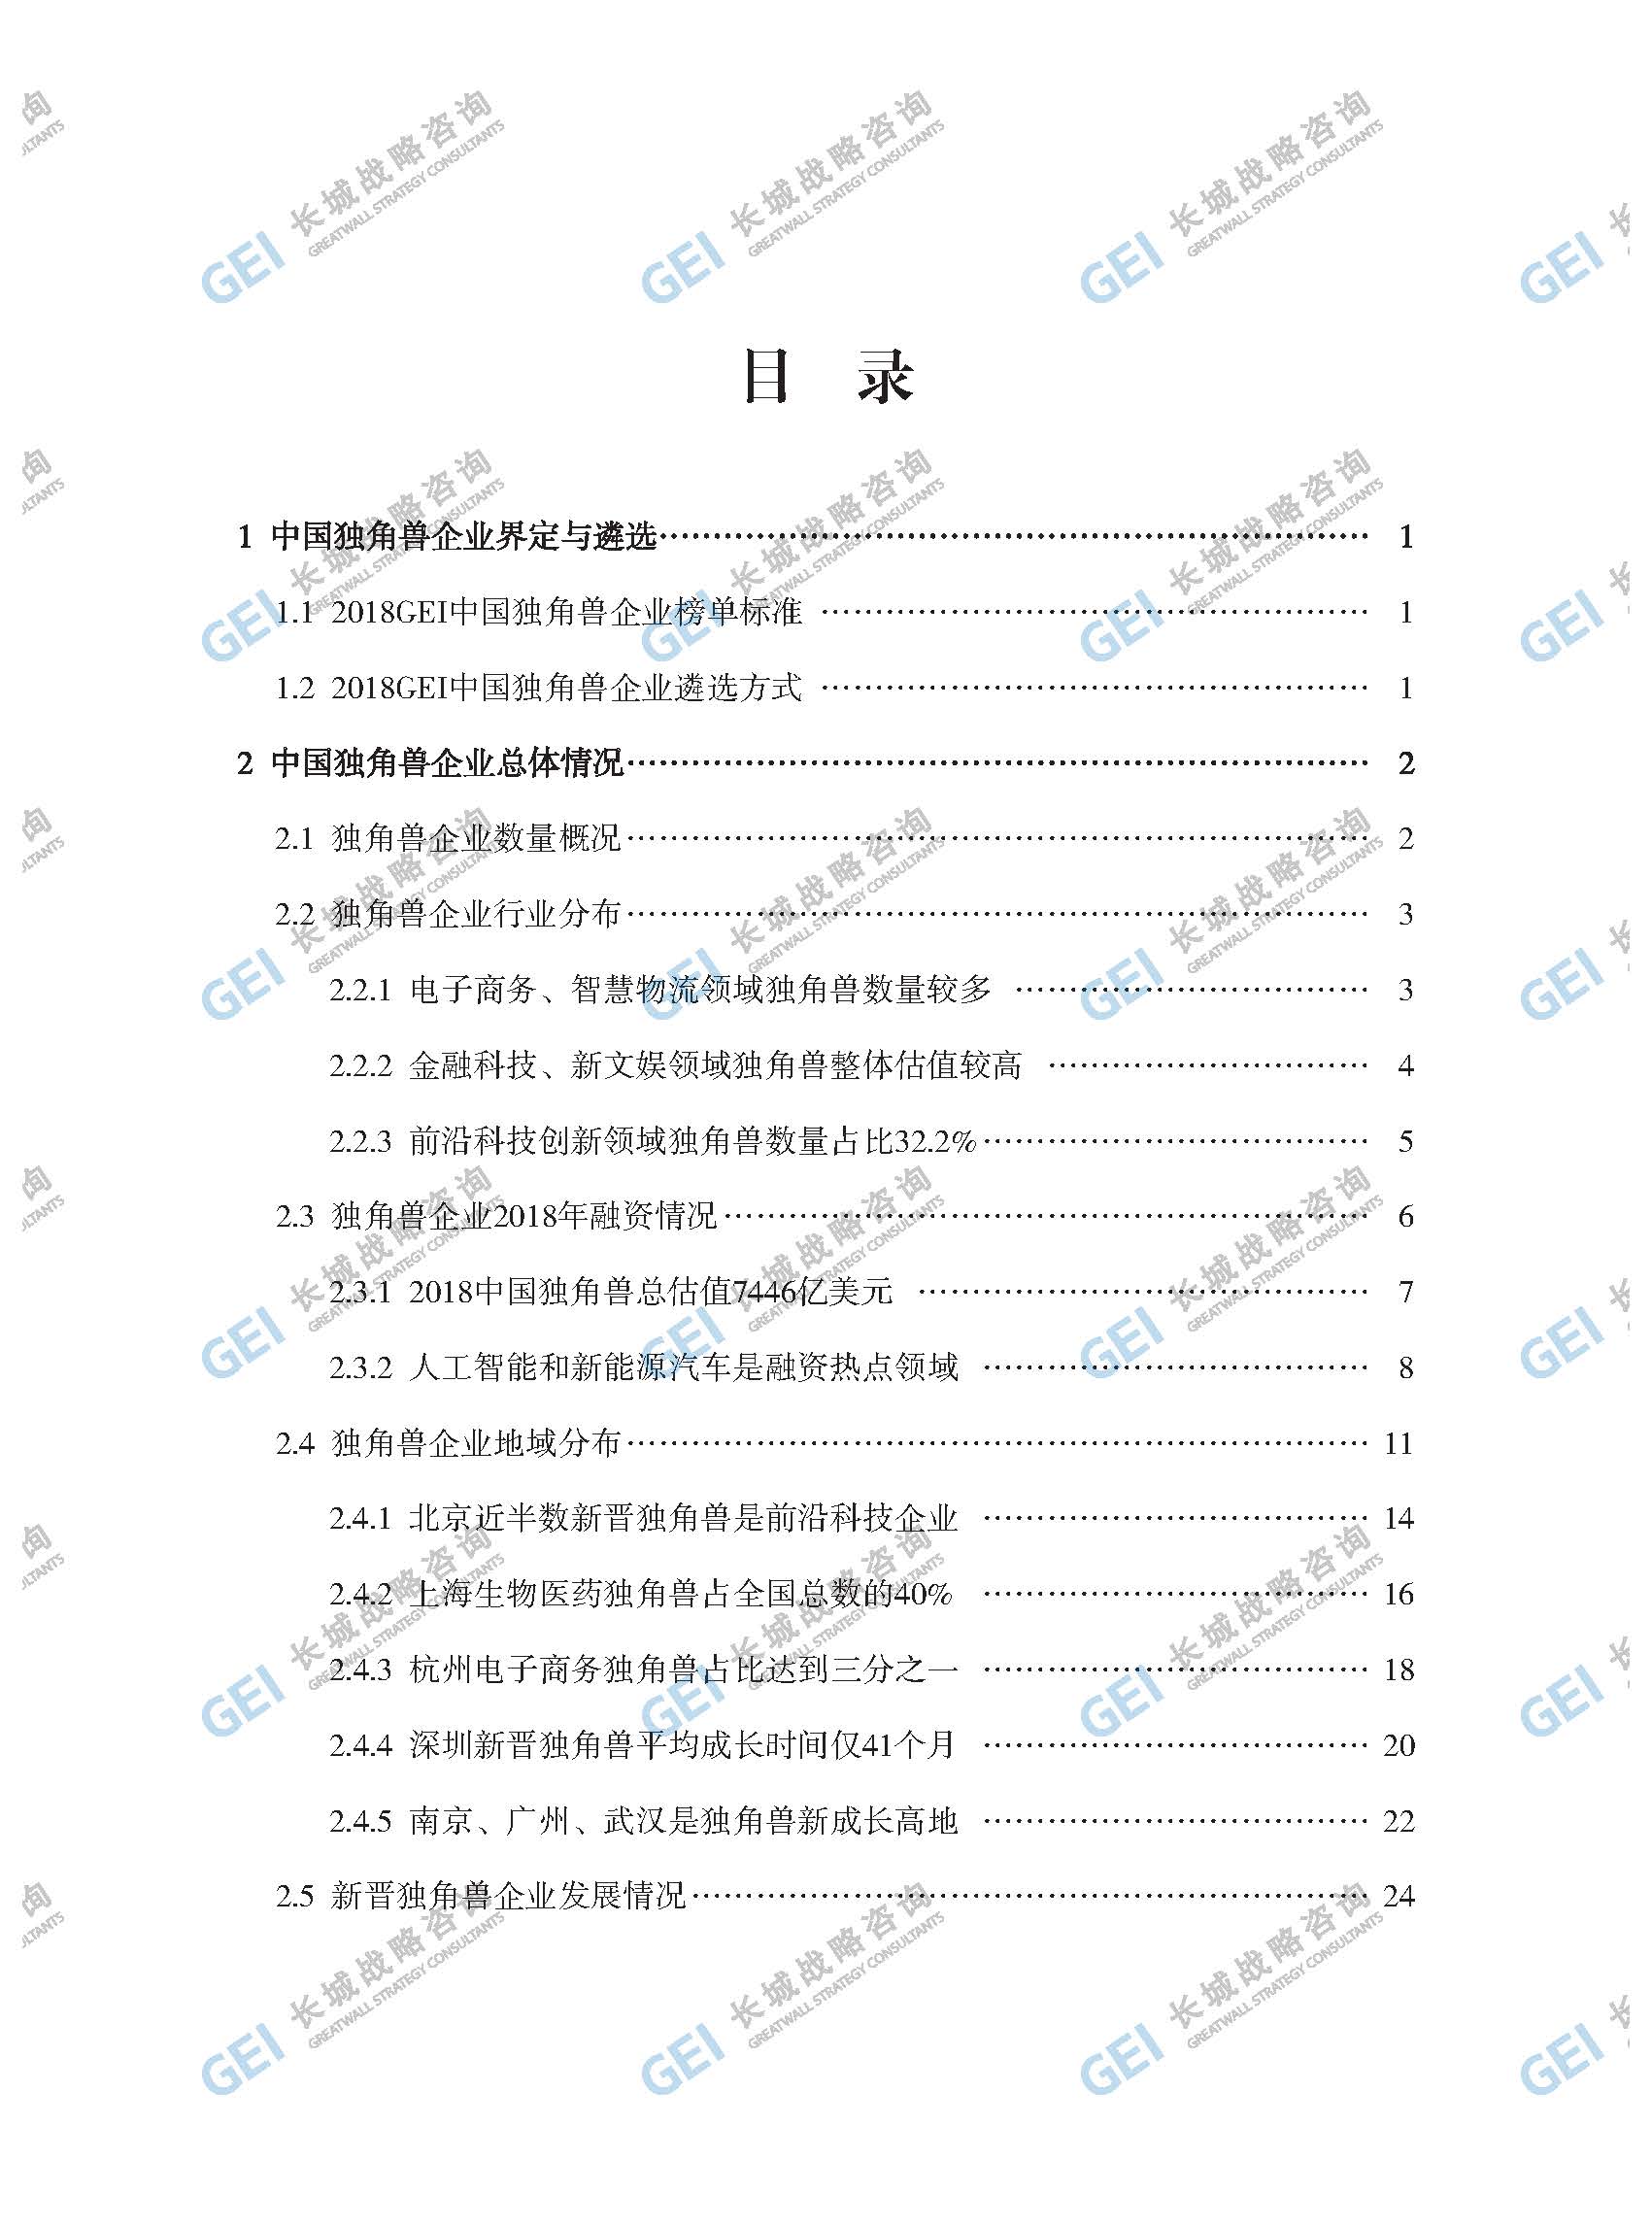 2018年中國獨角獸企業研究報告-加水印-已壓縮_頁面_003.jpg